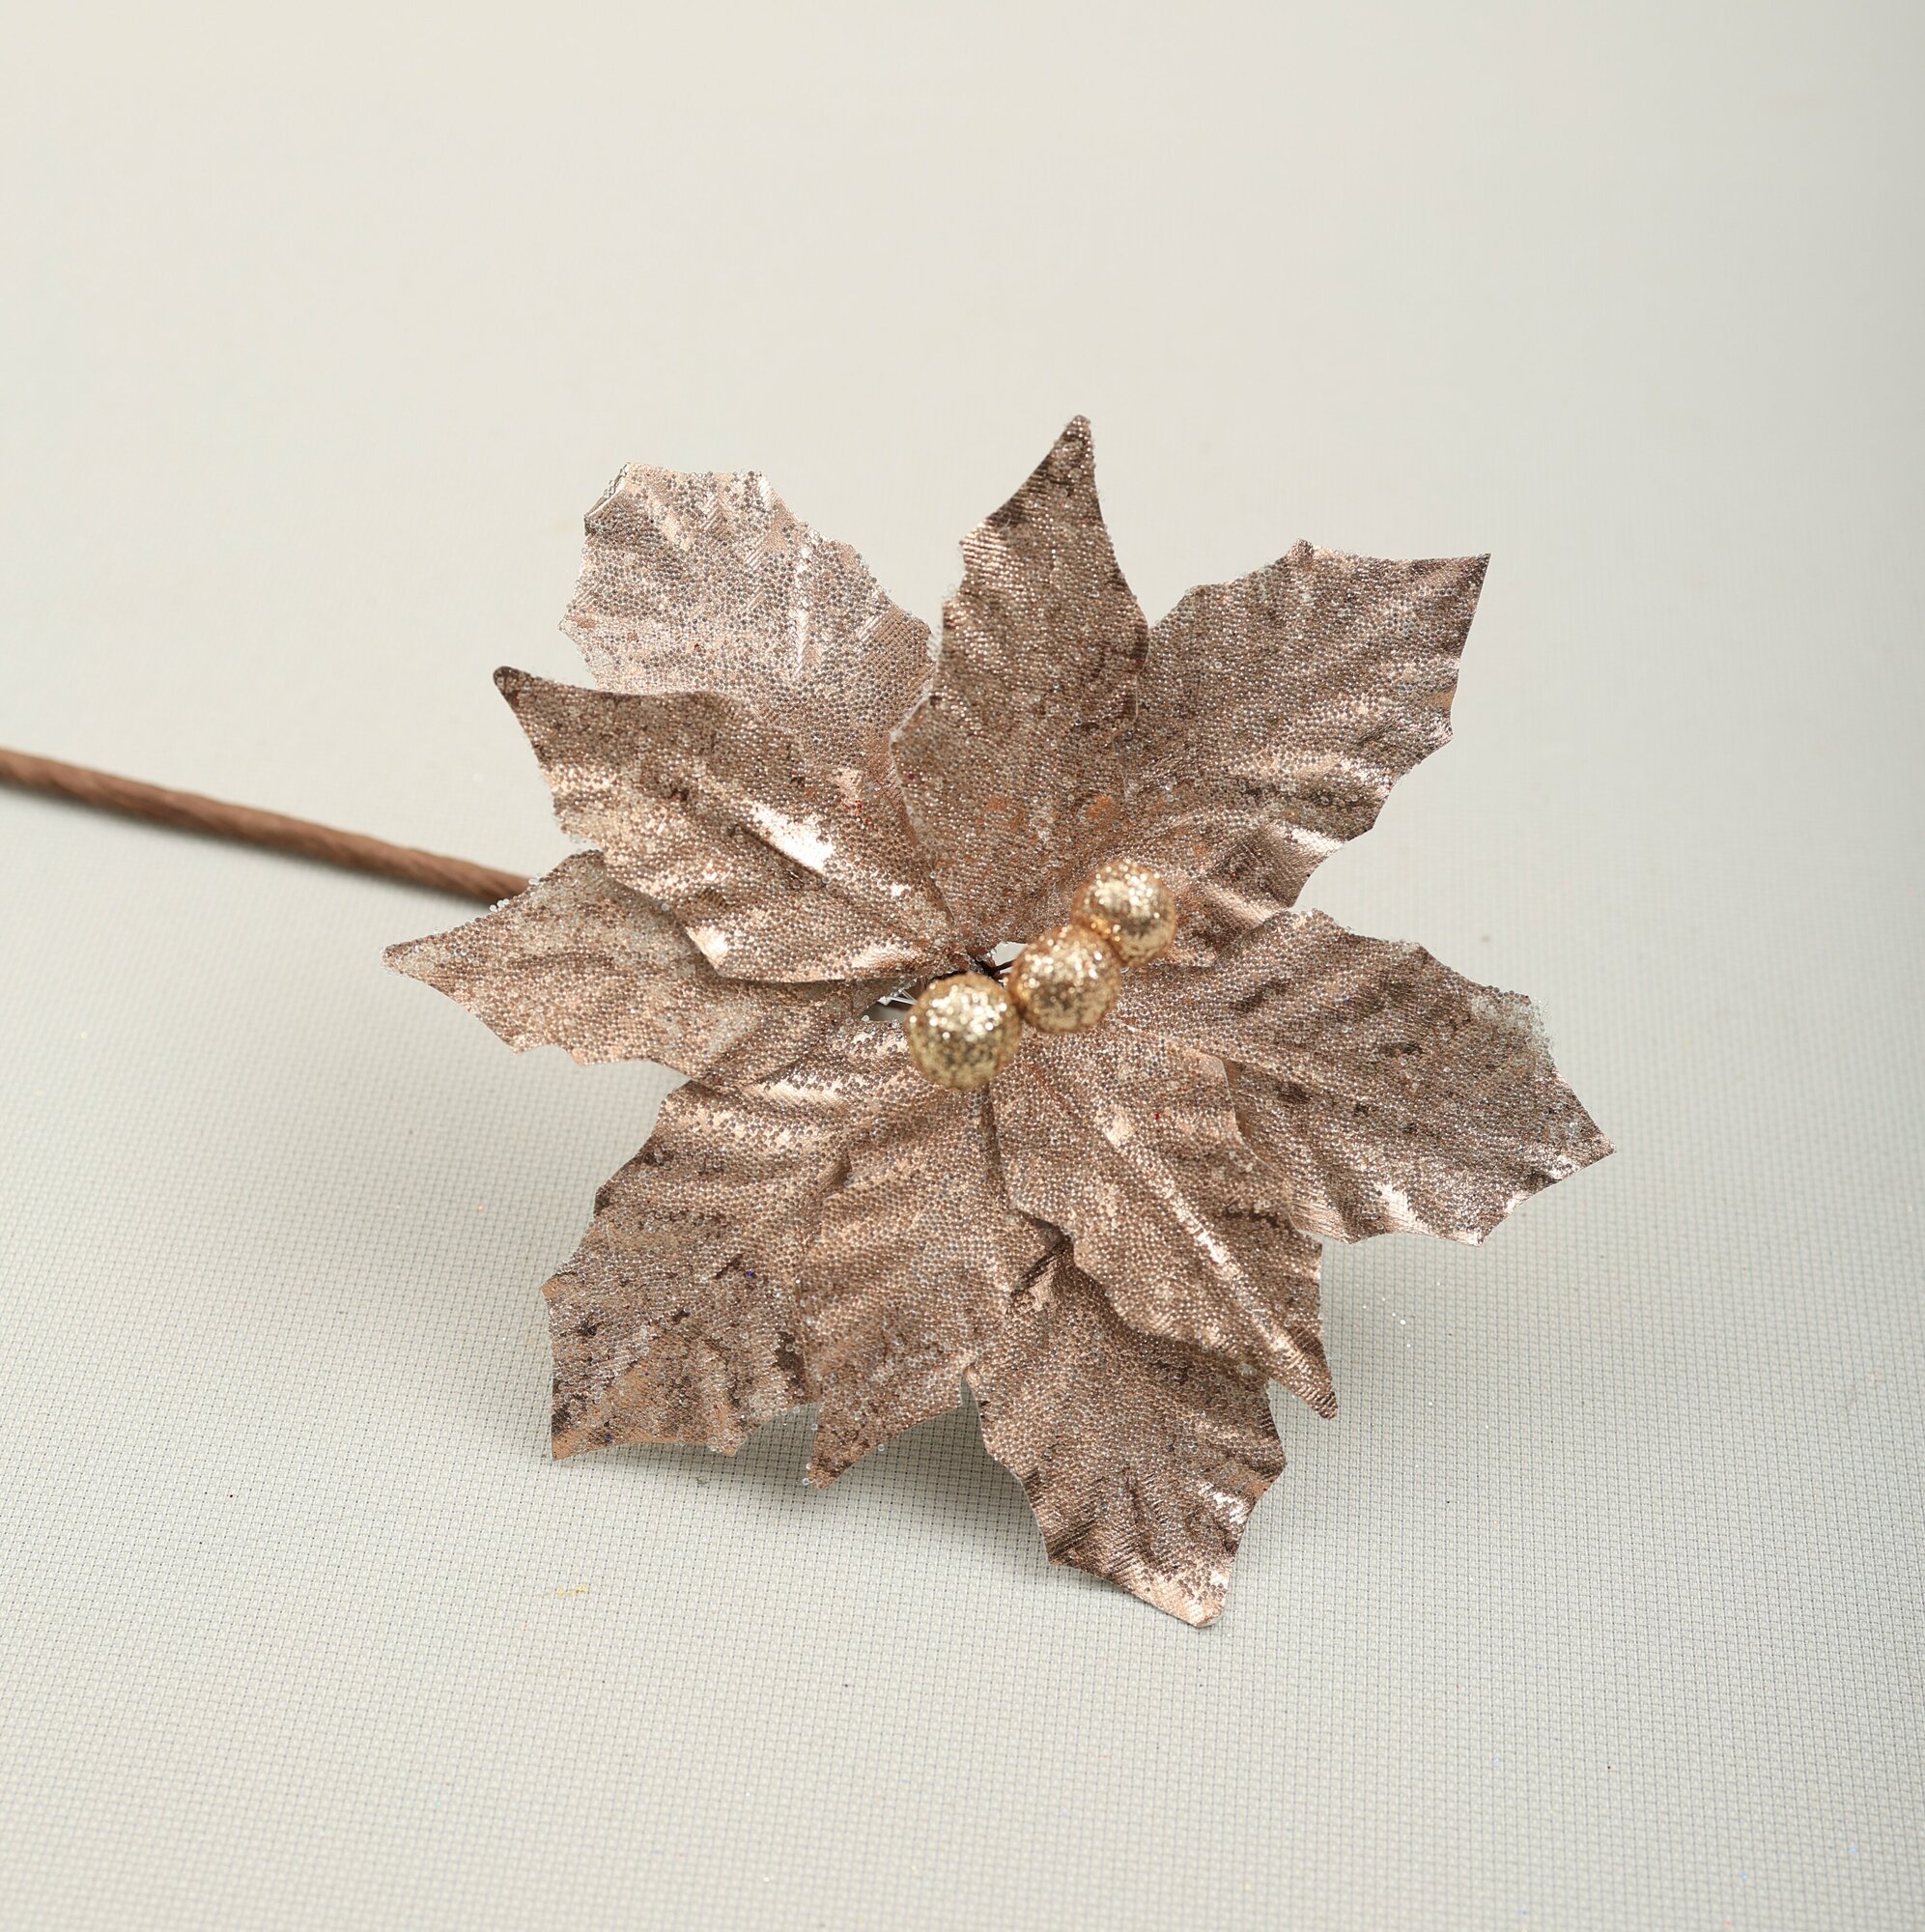 Цветок искусственный декоративный новогодний d 9 см цвет бежево-серебристый